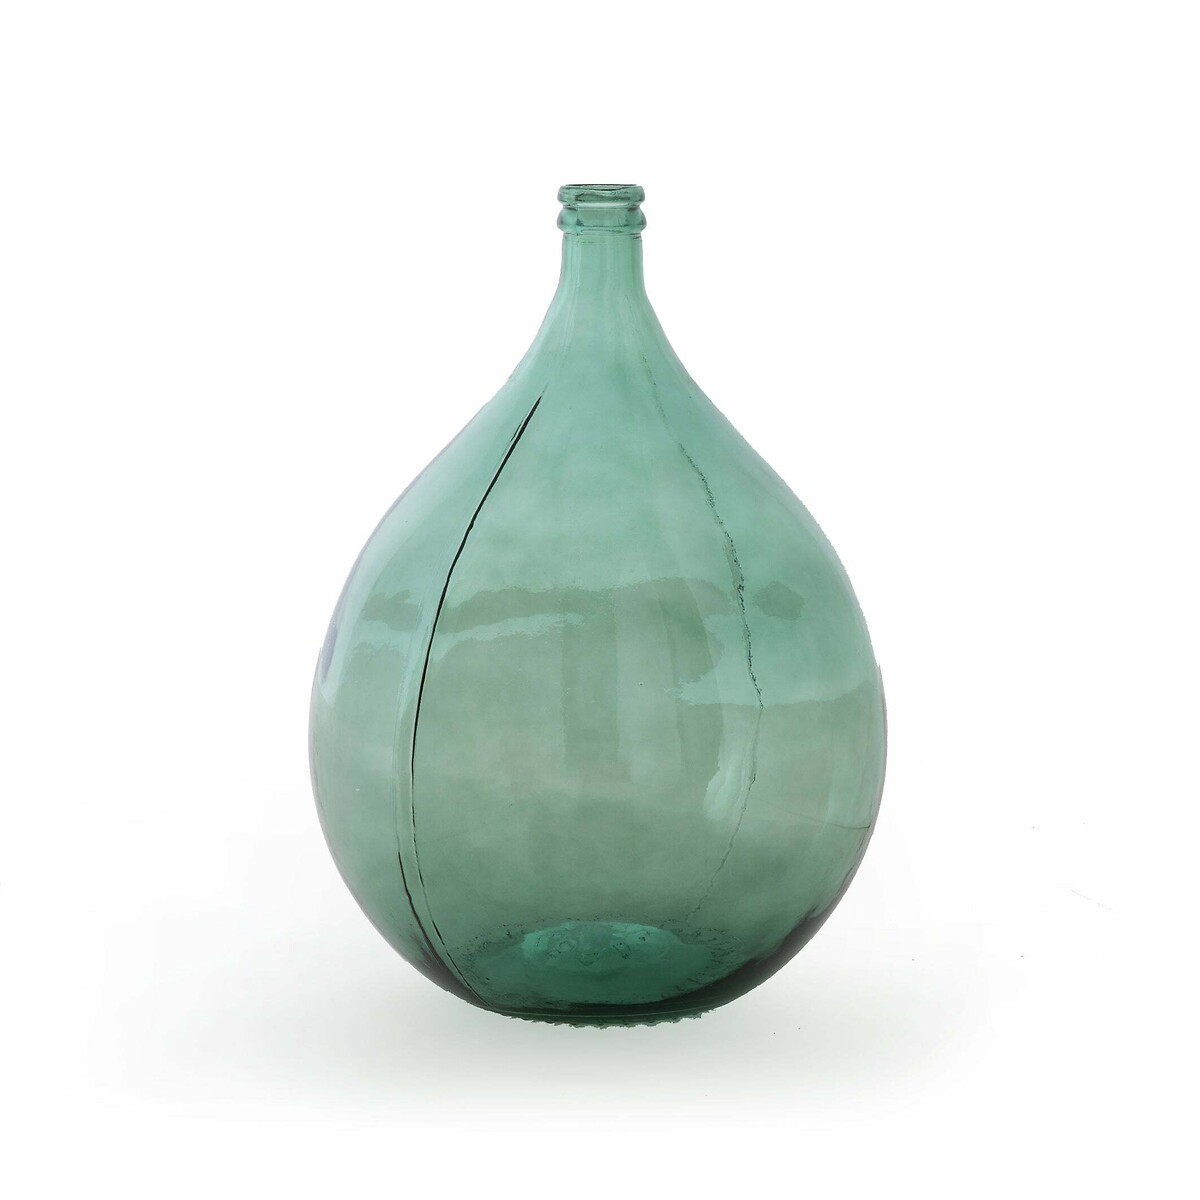 Ваза-бутыль Из стекла Izolia единый размер зеленый